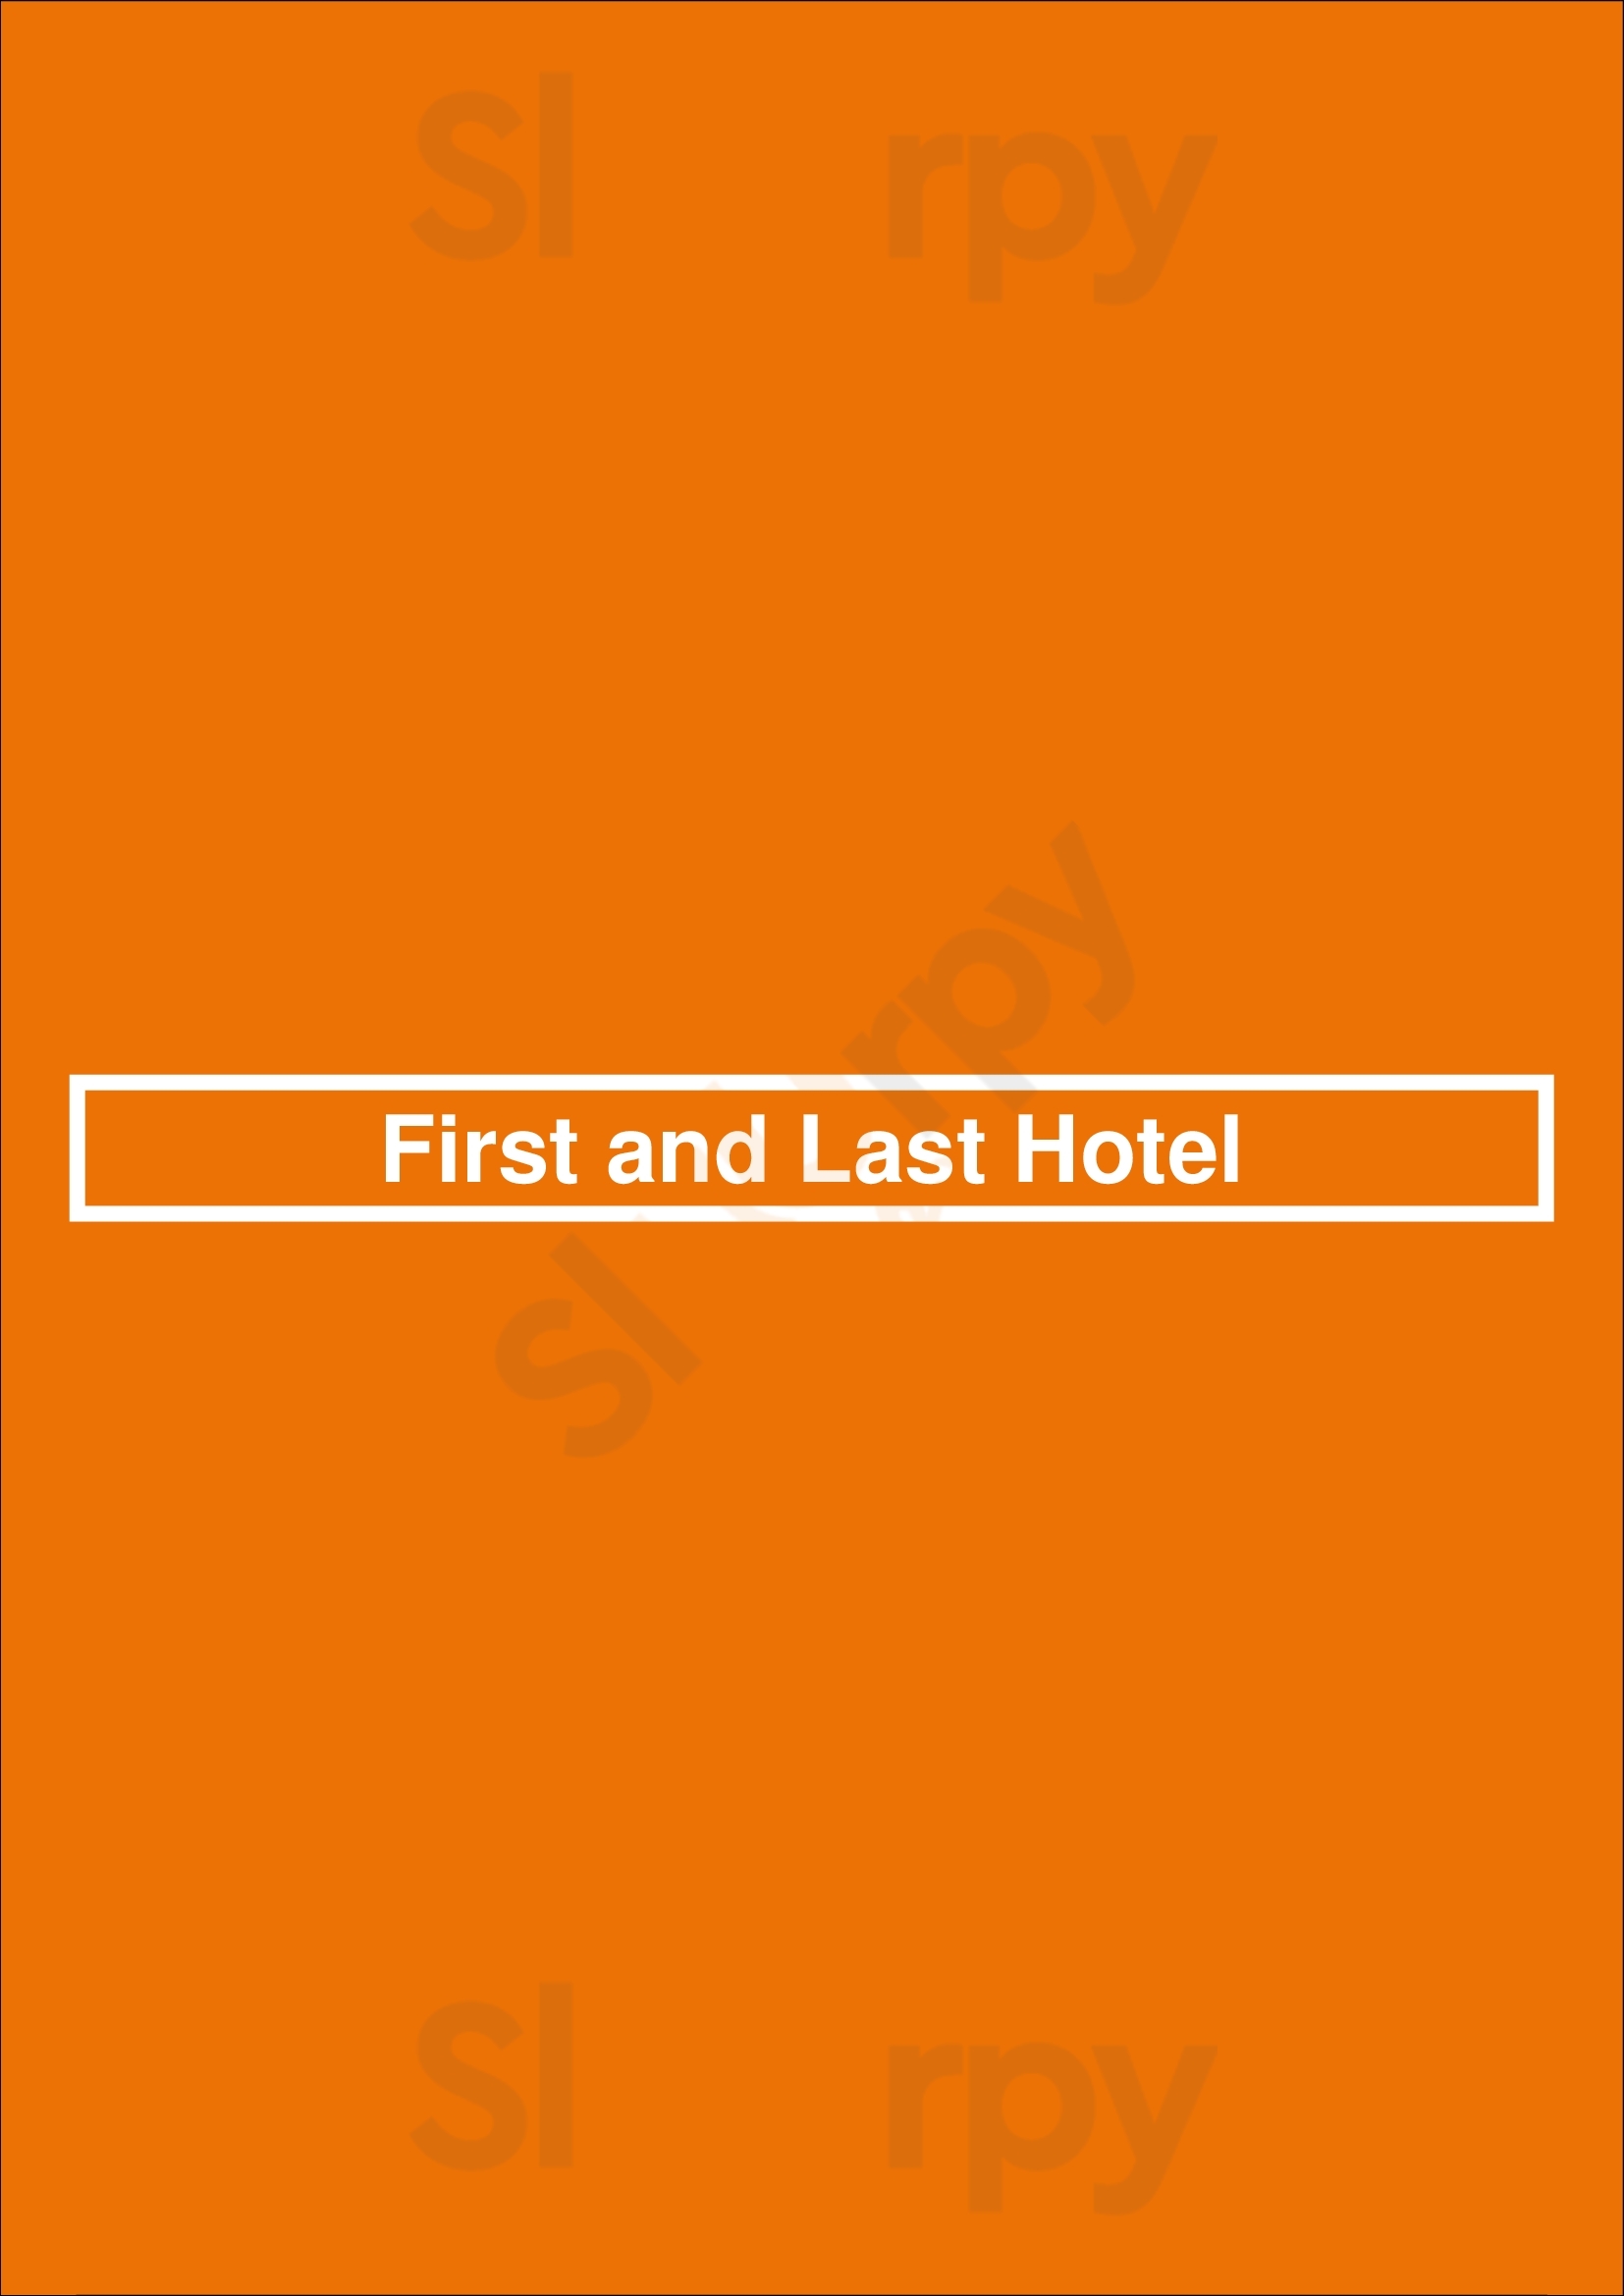 First & Last Hotel Fawkner Menu - 1